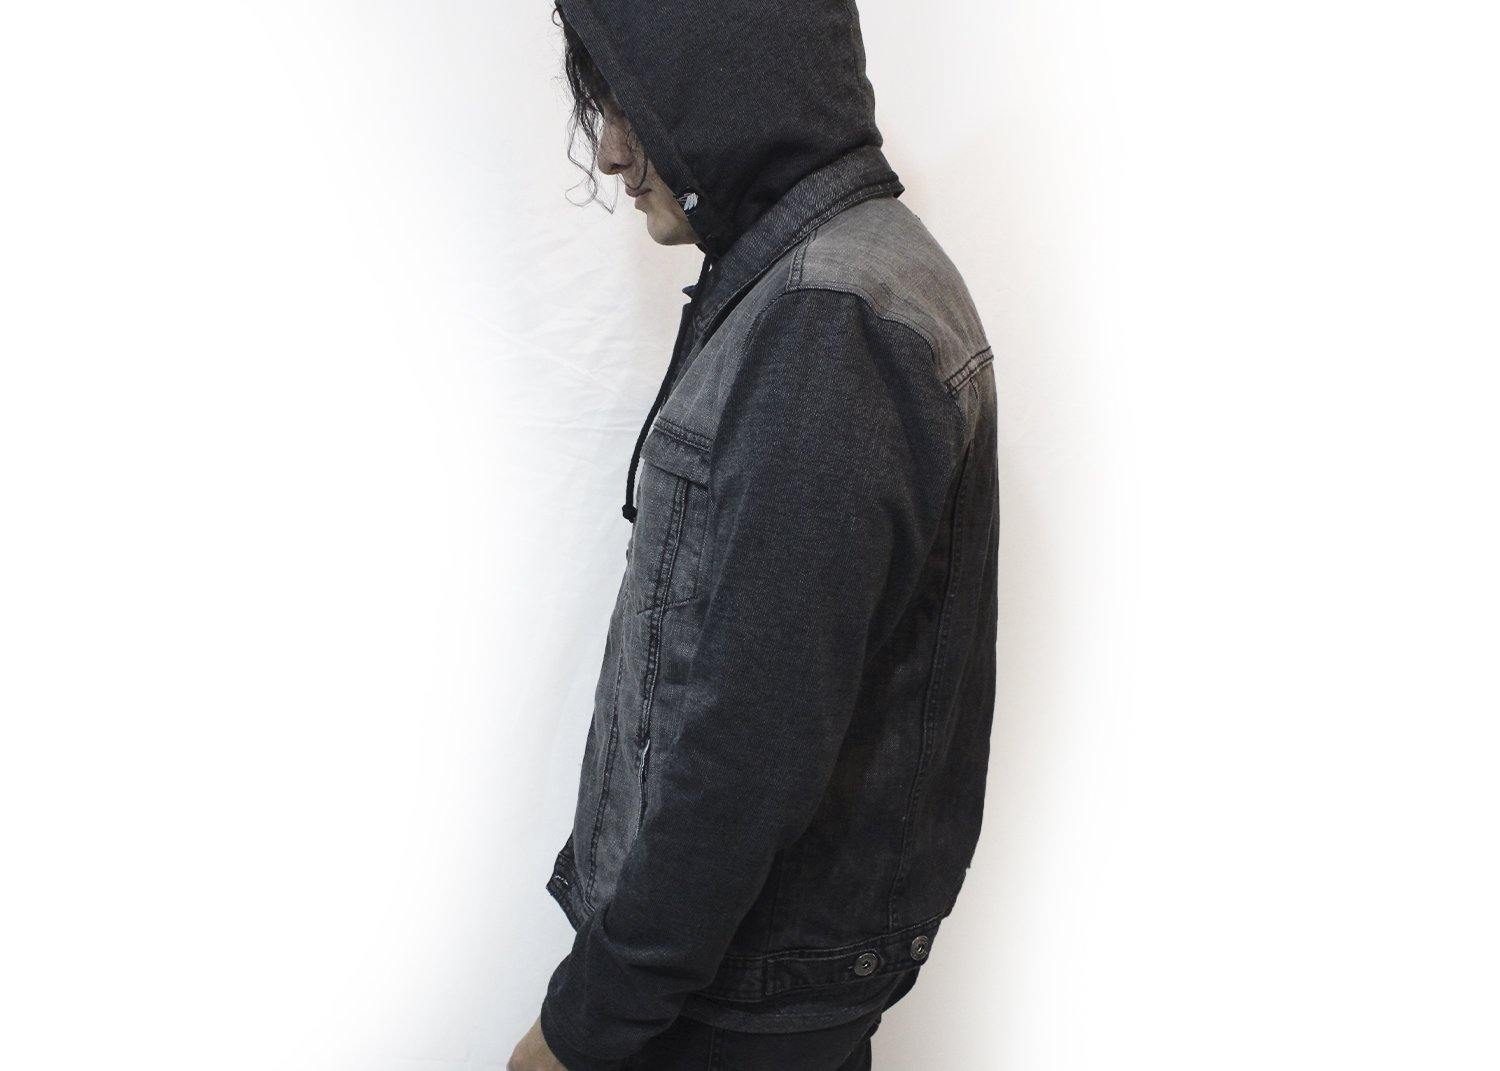 Black terry Hooded Chamarra de mezclilla Slim fit (Edición limitada) Denim jacket - Stockholm Co. - chamarra - hombre, stkm originals, sudadera